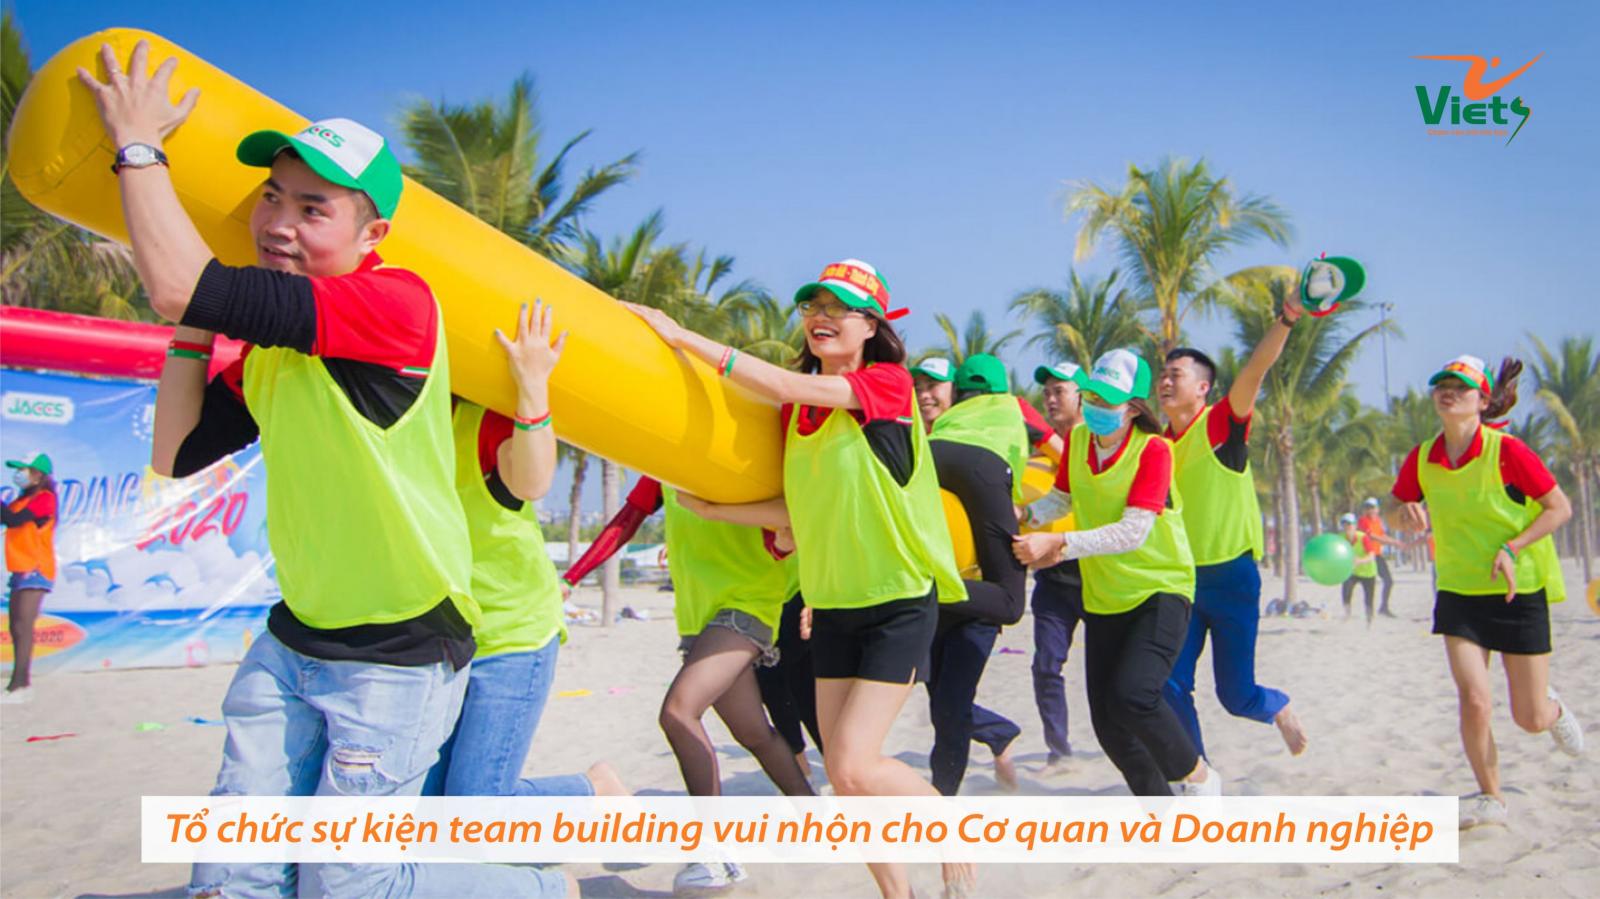 Viets Media - Cho thuê đồ chơi Team Building giá rẻ tại Phú Thọ